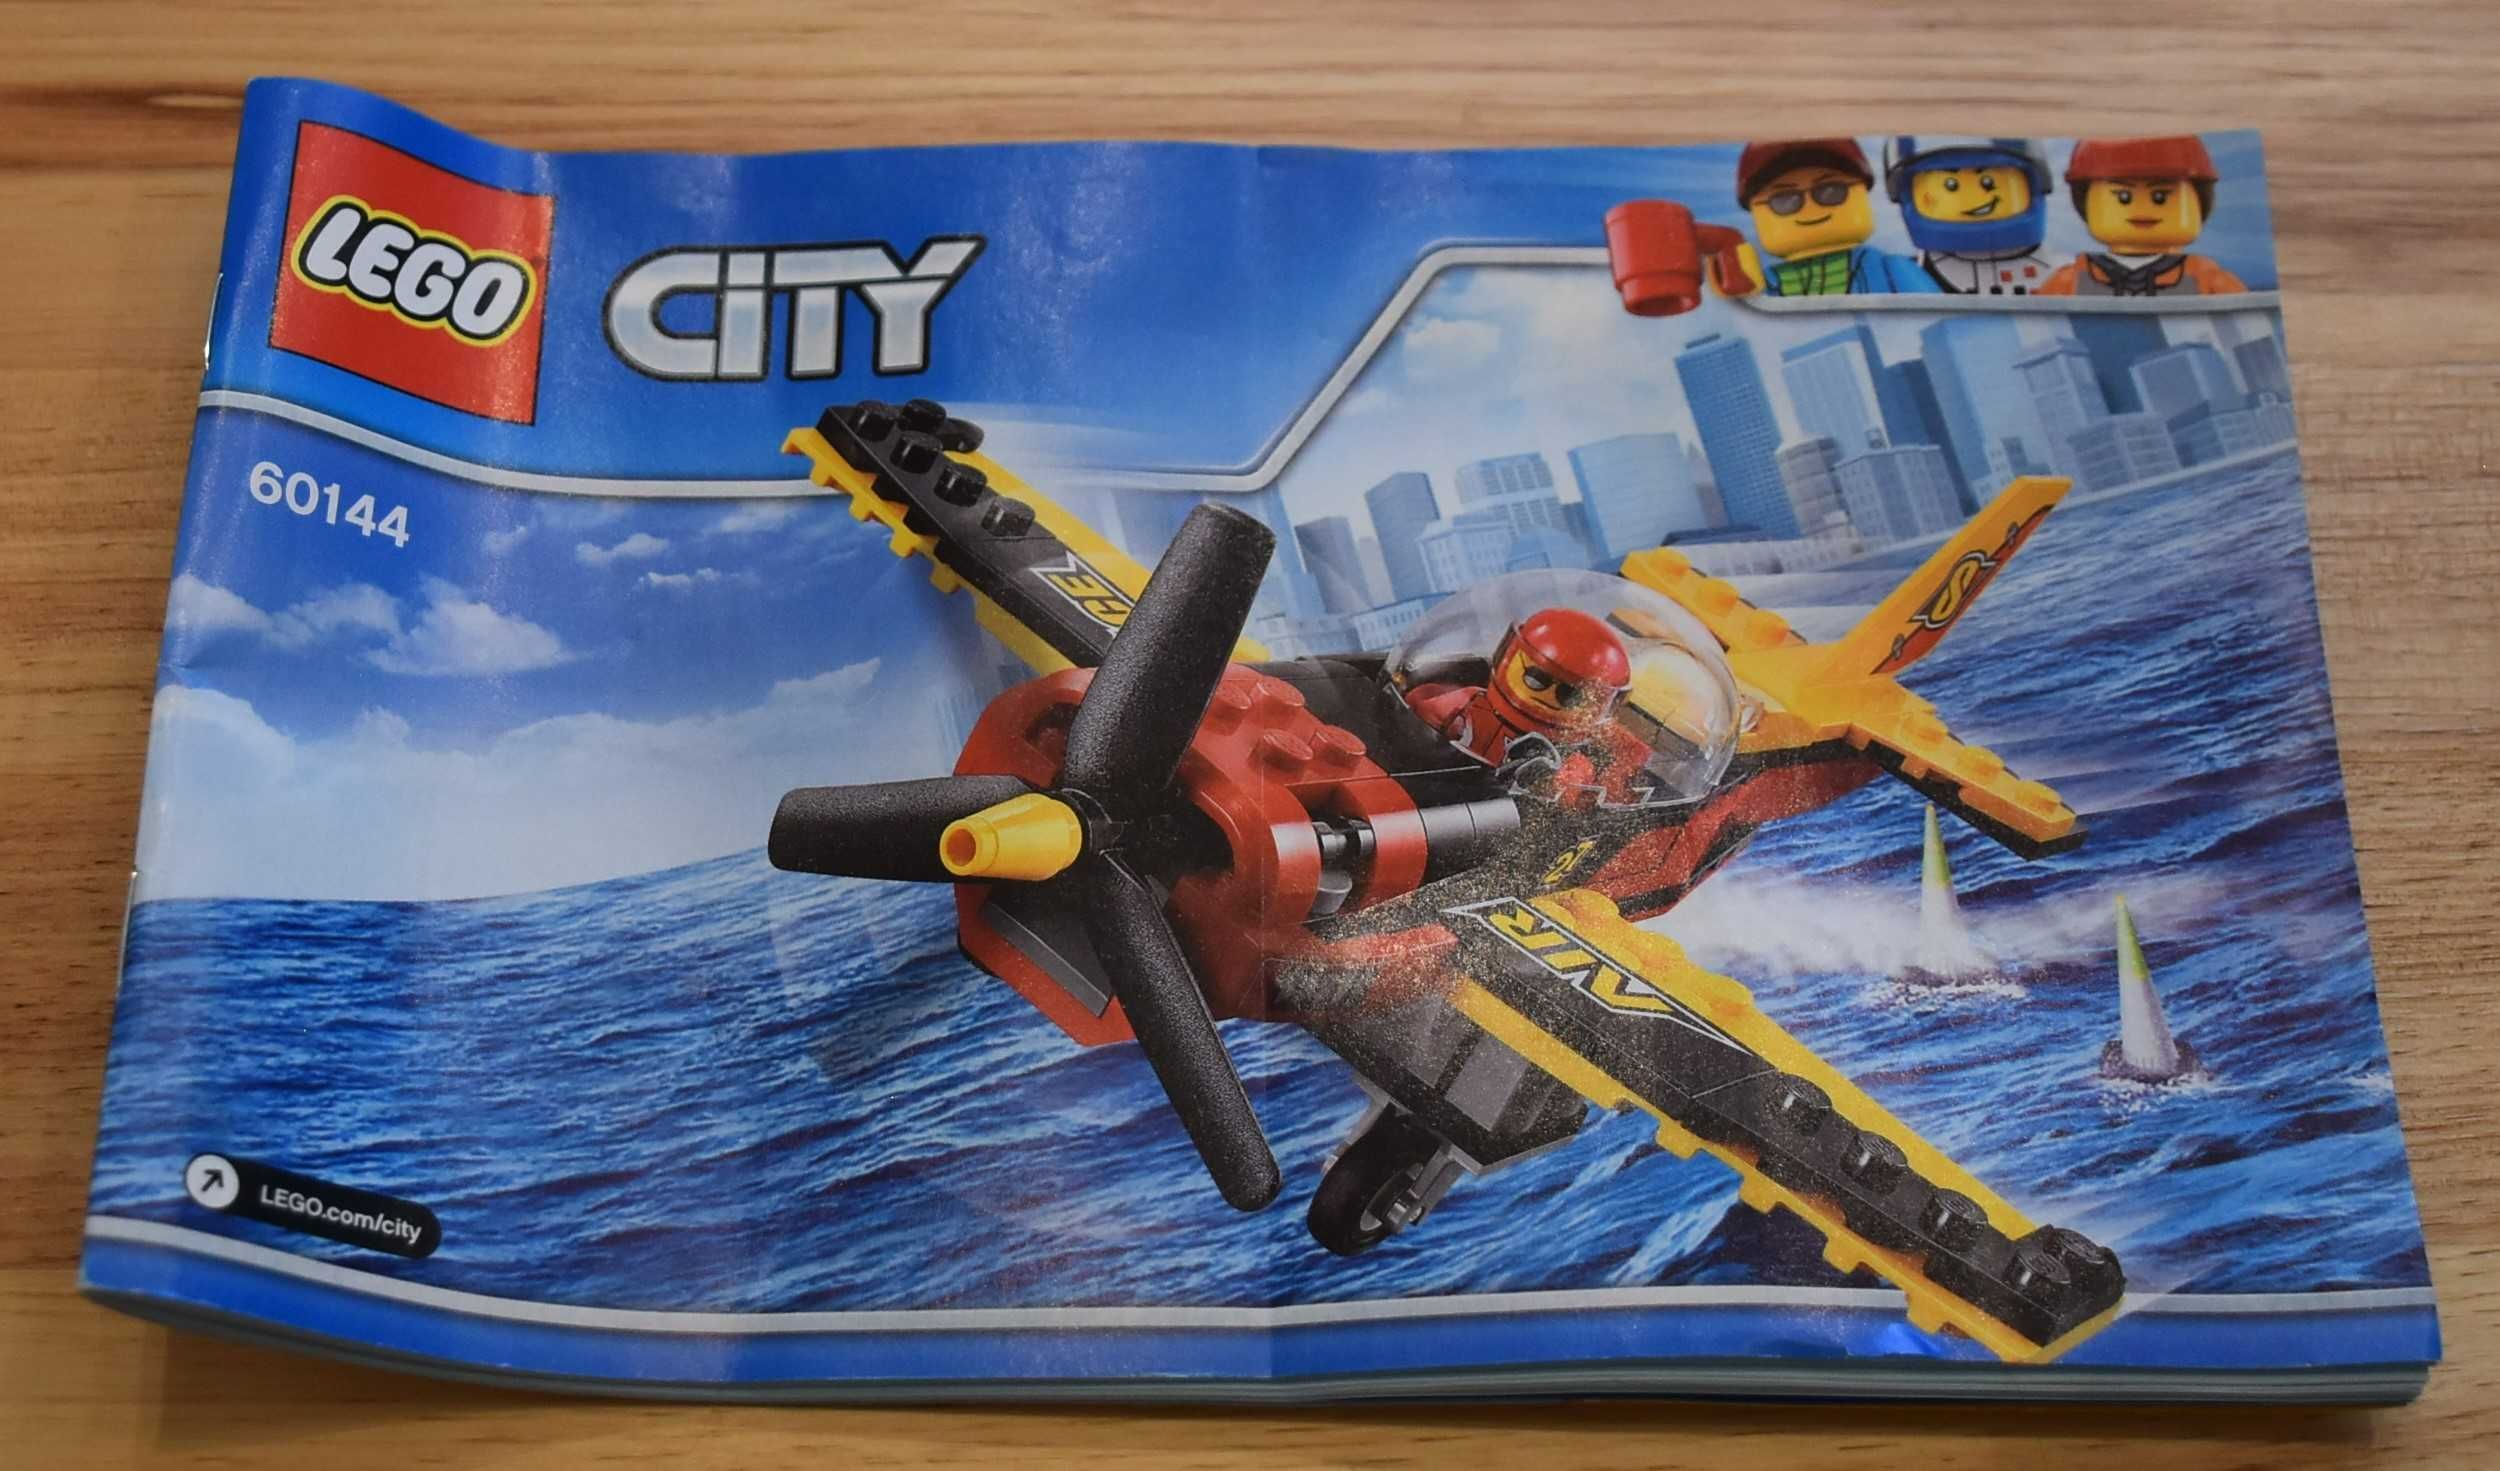 60144 Lego City Samolot wyścigowy MISB